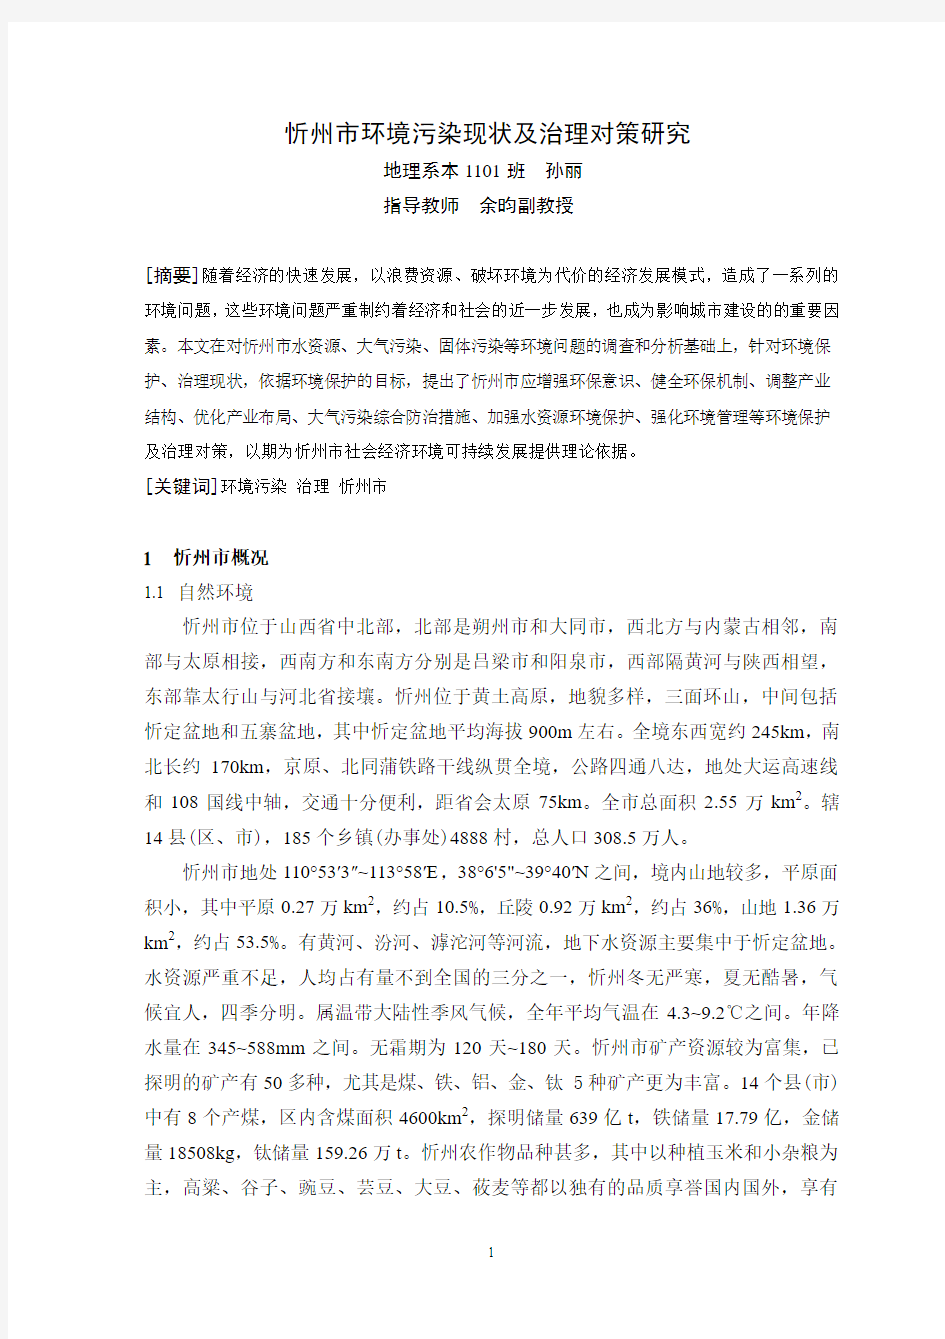 忻州市环境污染现状及治理对策6.22 - 副本